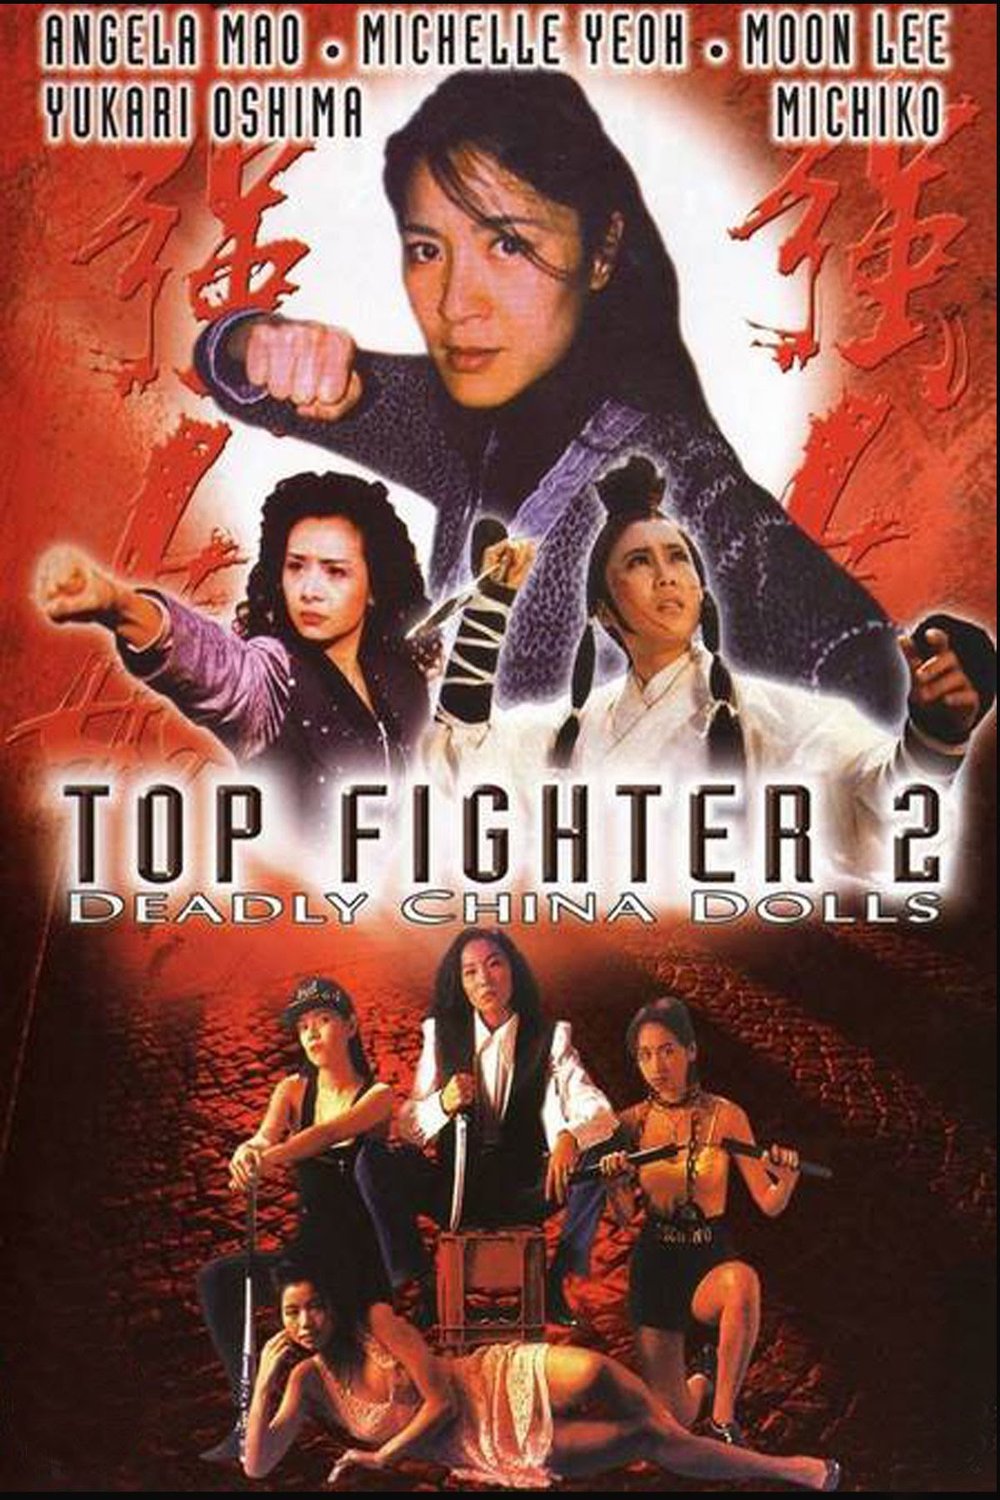 L'affiche originale du film Top Fighter 2 en Cantonais